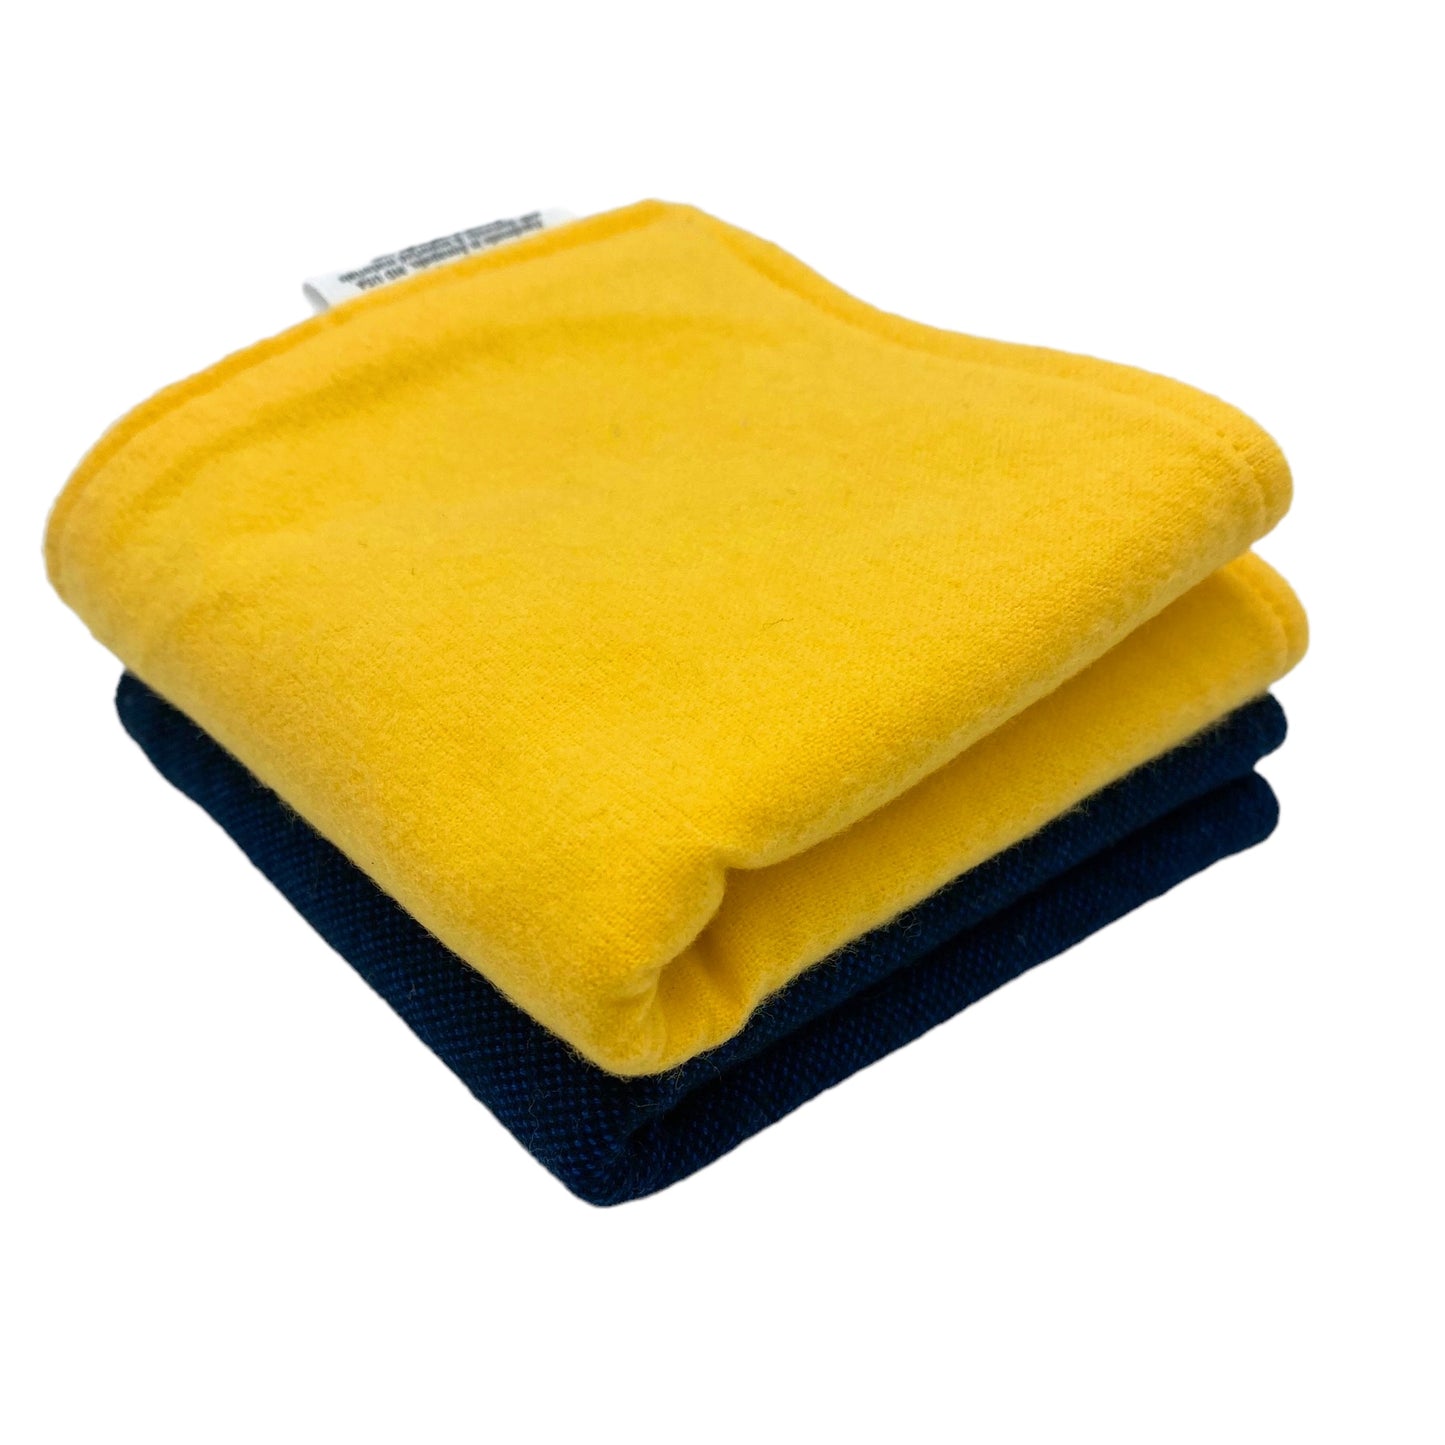 Wash Cloth - Regular - Solids - Herringbone Navy and Yellow